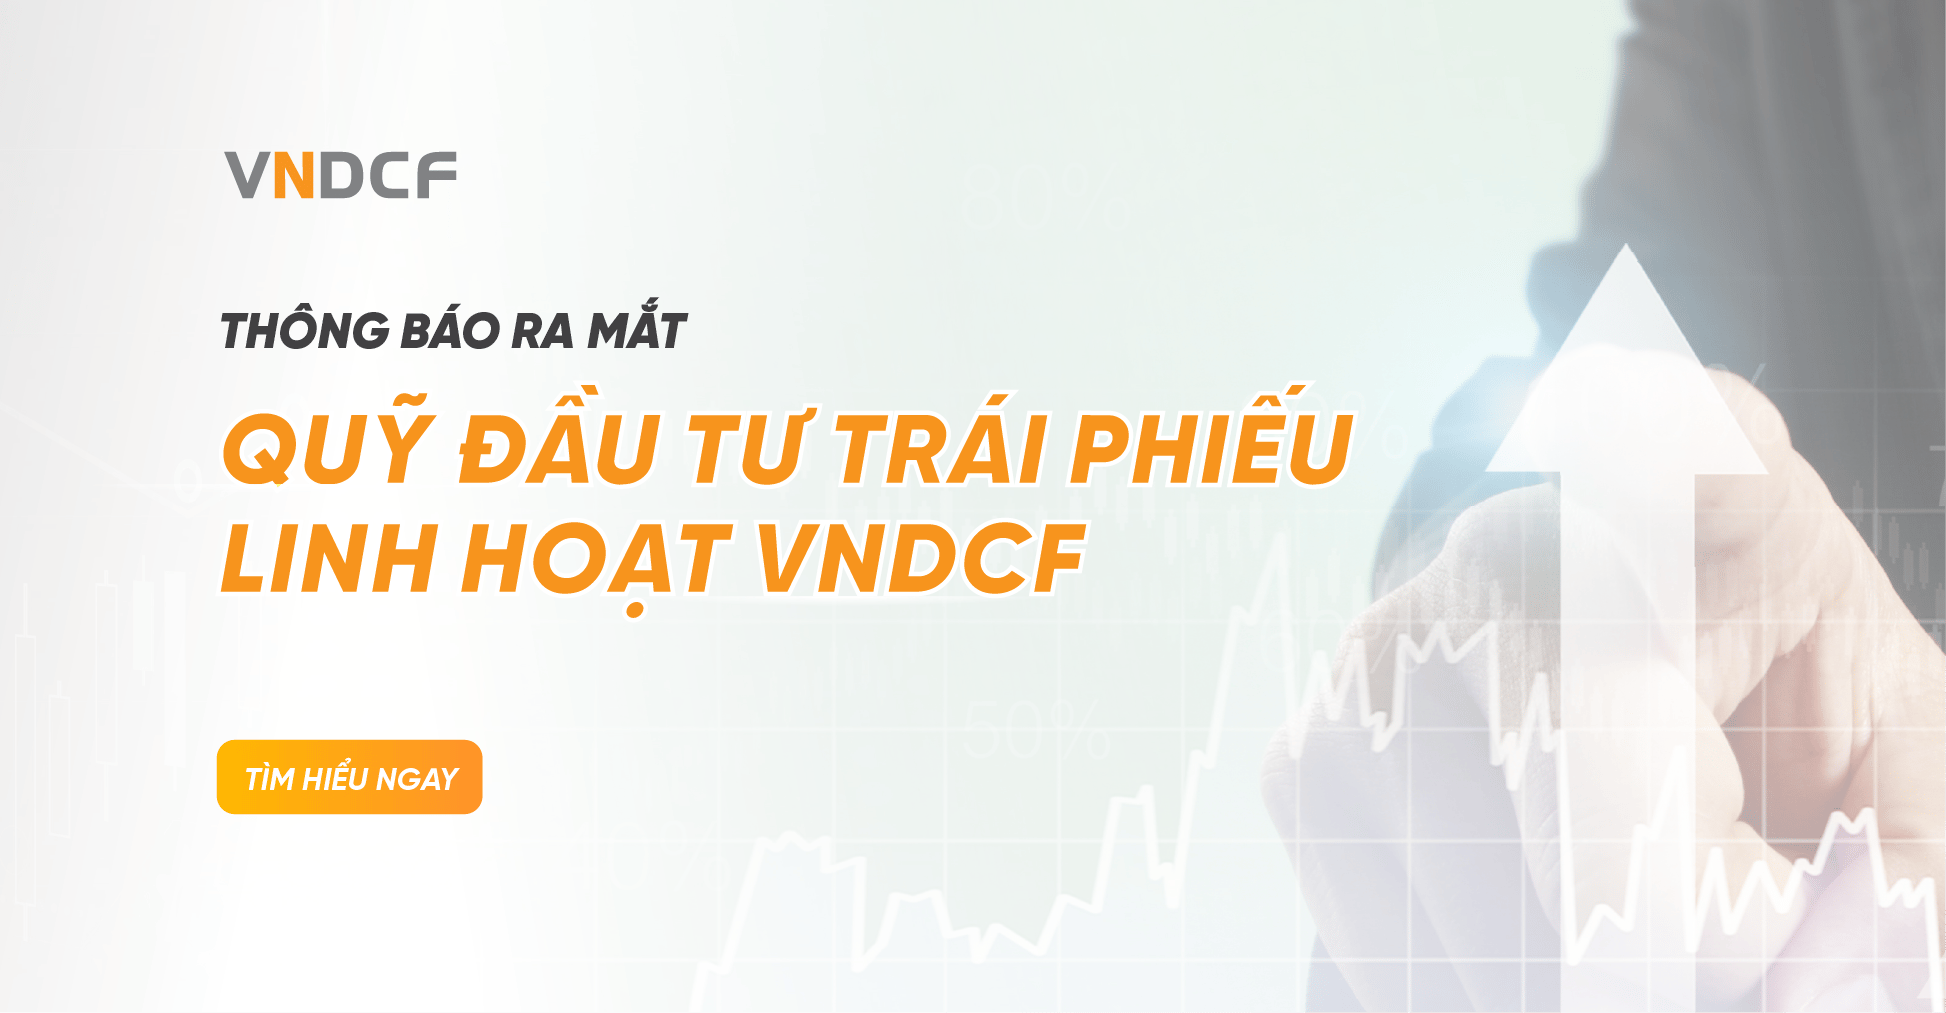 Quỹ đầu tư trái phiếu linh hoạt VNDCF trên bảng giá chứng khoán VNDIRECT phù hợp cho đối tượng đầu tư nào?